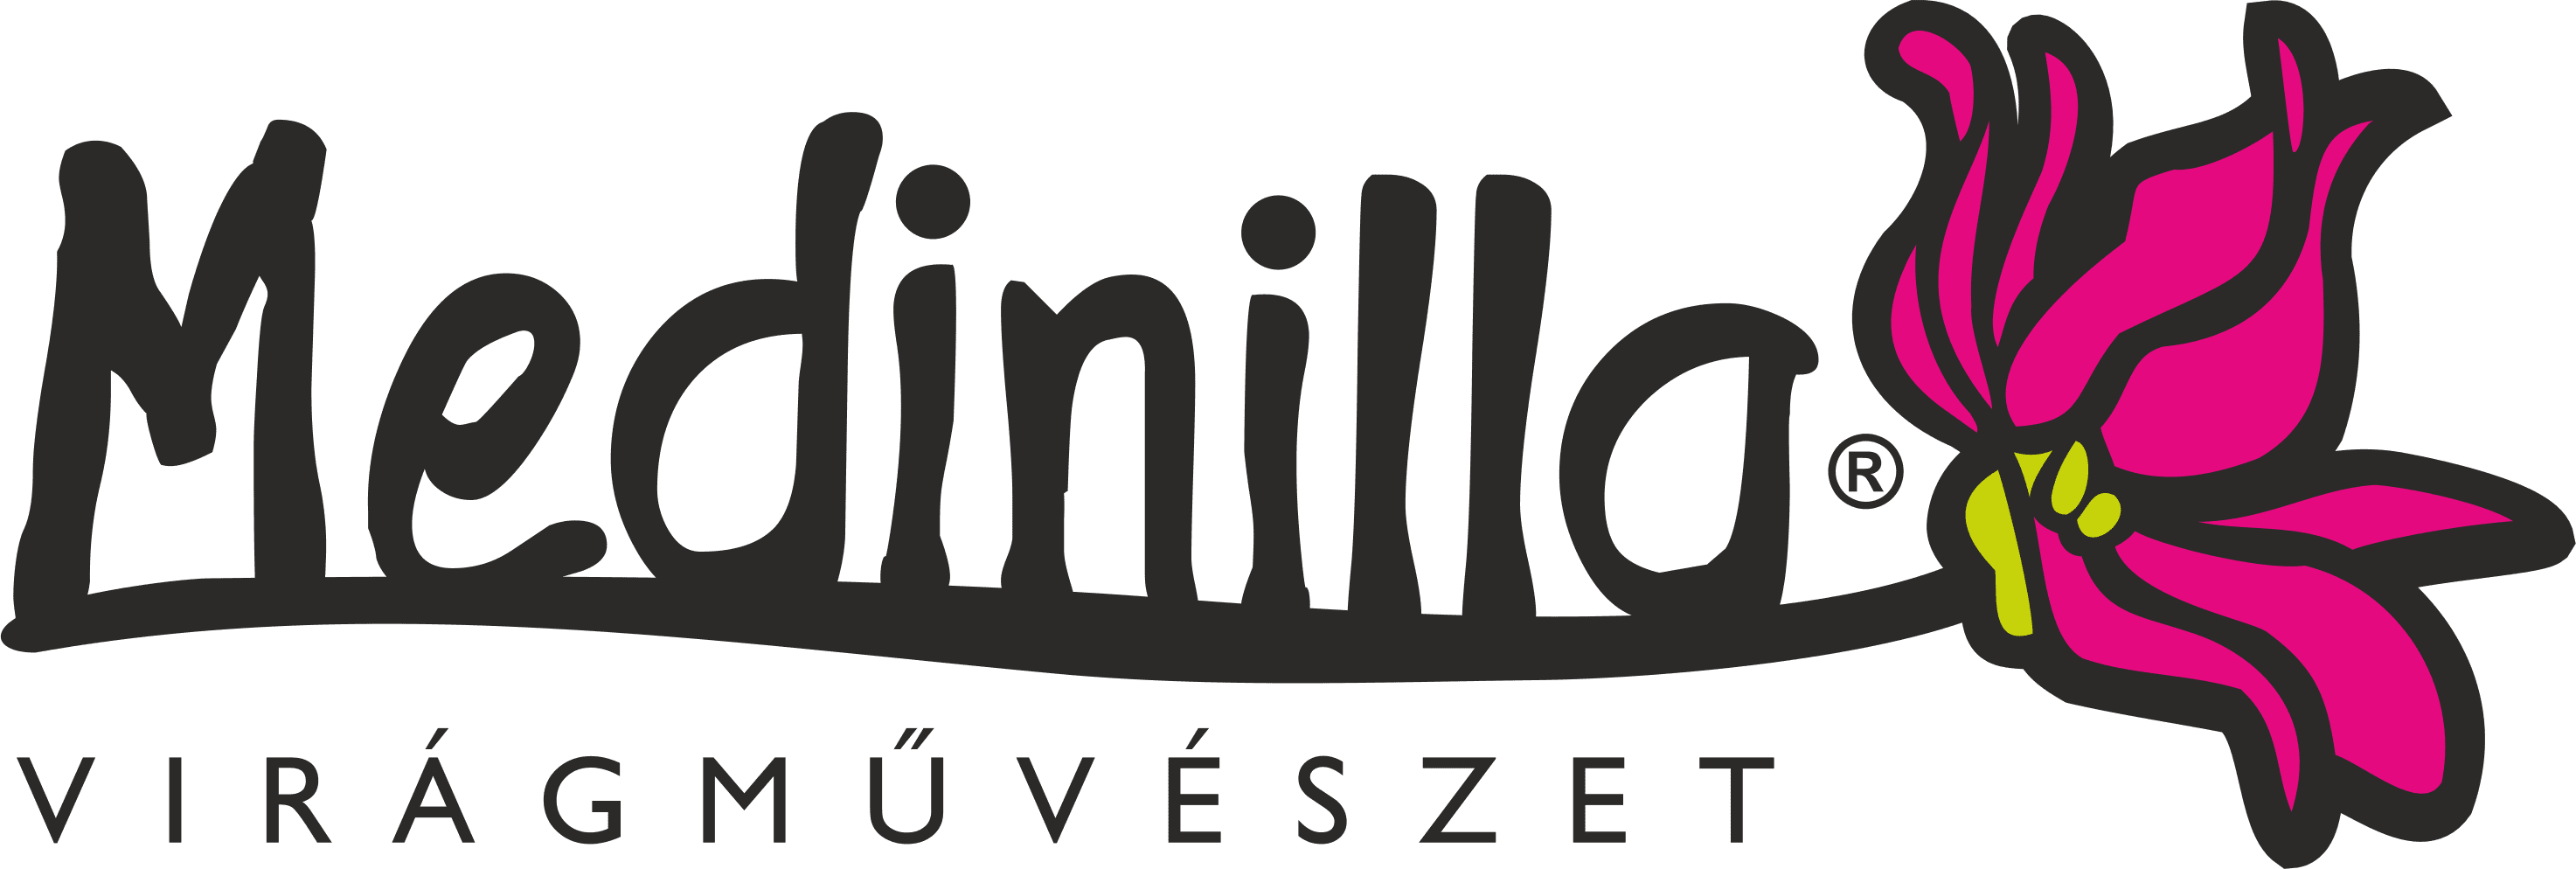 medinilla_logo